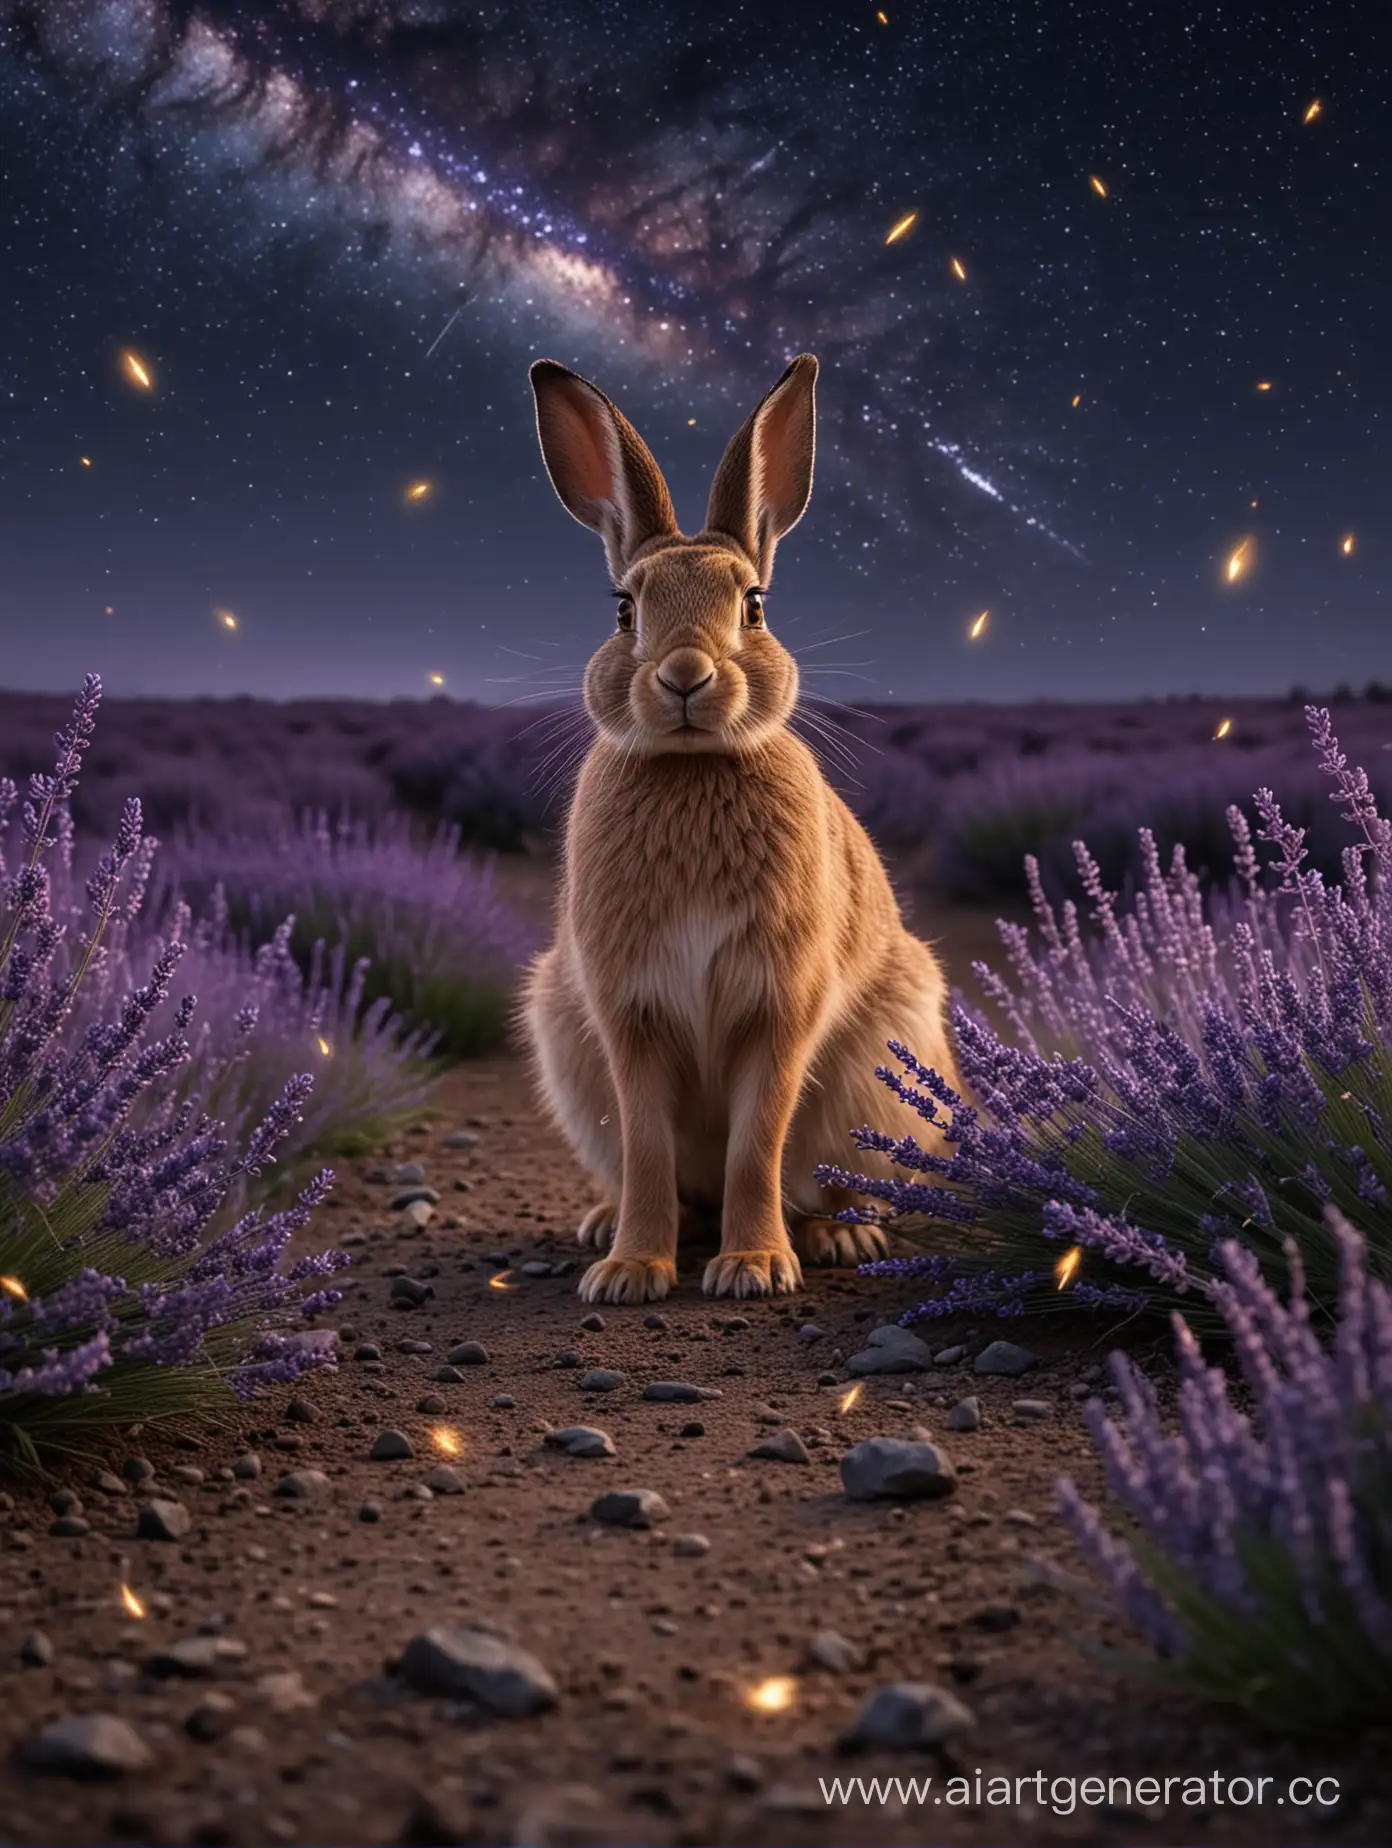 Лавандовое поле ночью, на земле сидит заяц, размытый фон, на фоне звездопад, в воздухе летают светлячки, реалистично